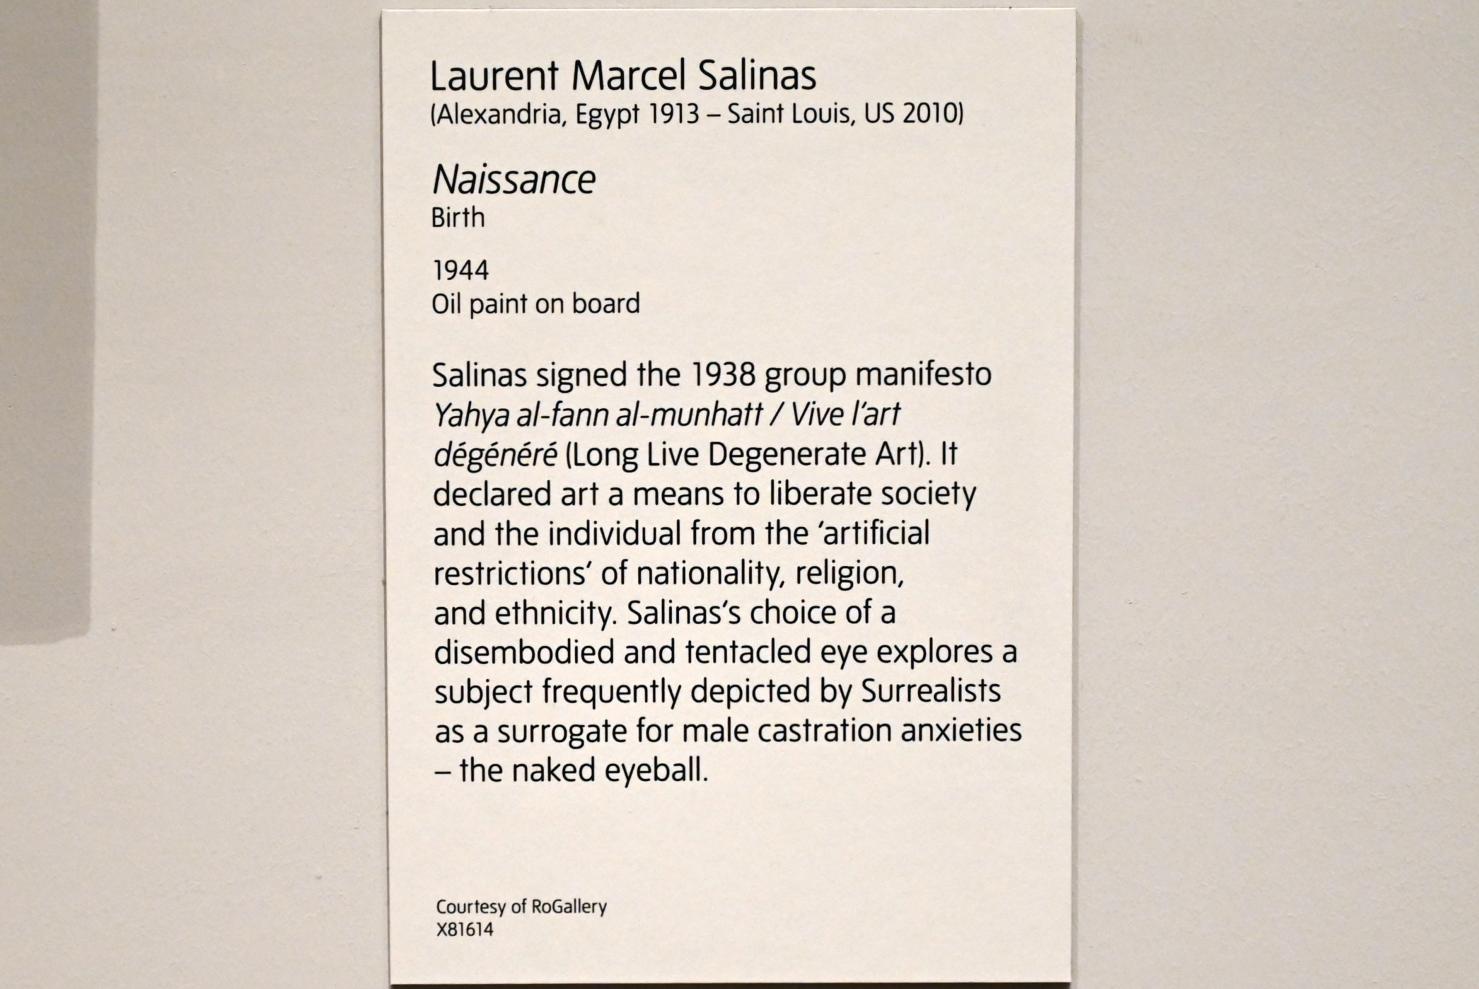 Laurent Marcel Salinas (1944), Geburt, London, Tate Modern, Ausstellung "Surrealism Beyond Borders" vom 24.02.-29.08.2022, Saal 10, 1944, Bild 2/2